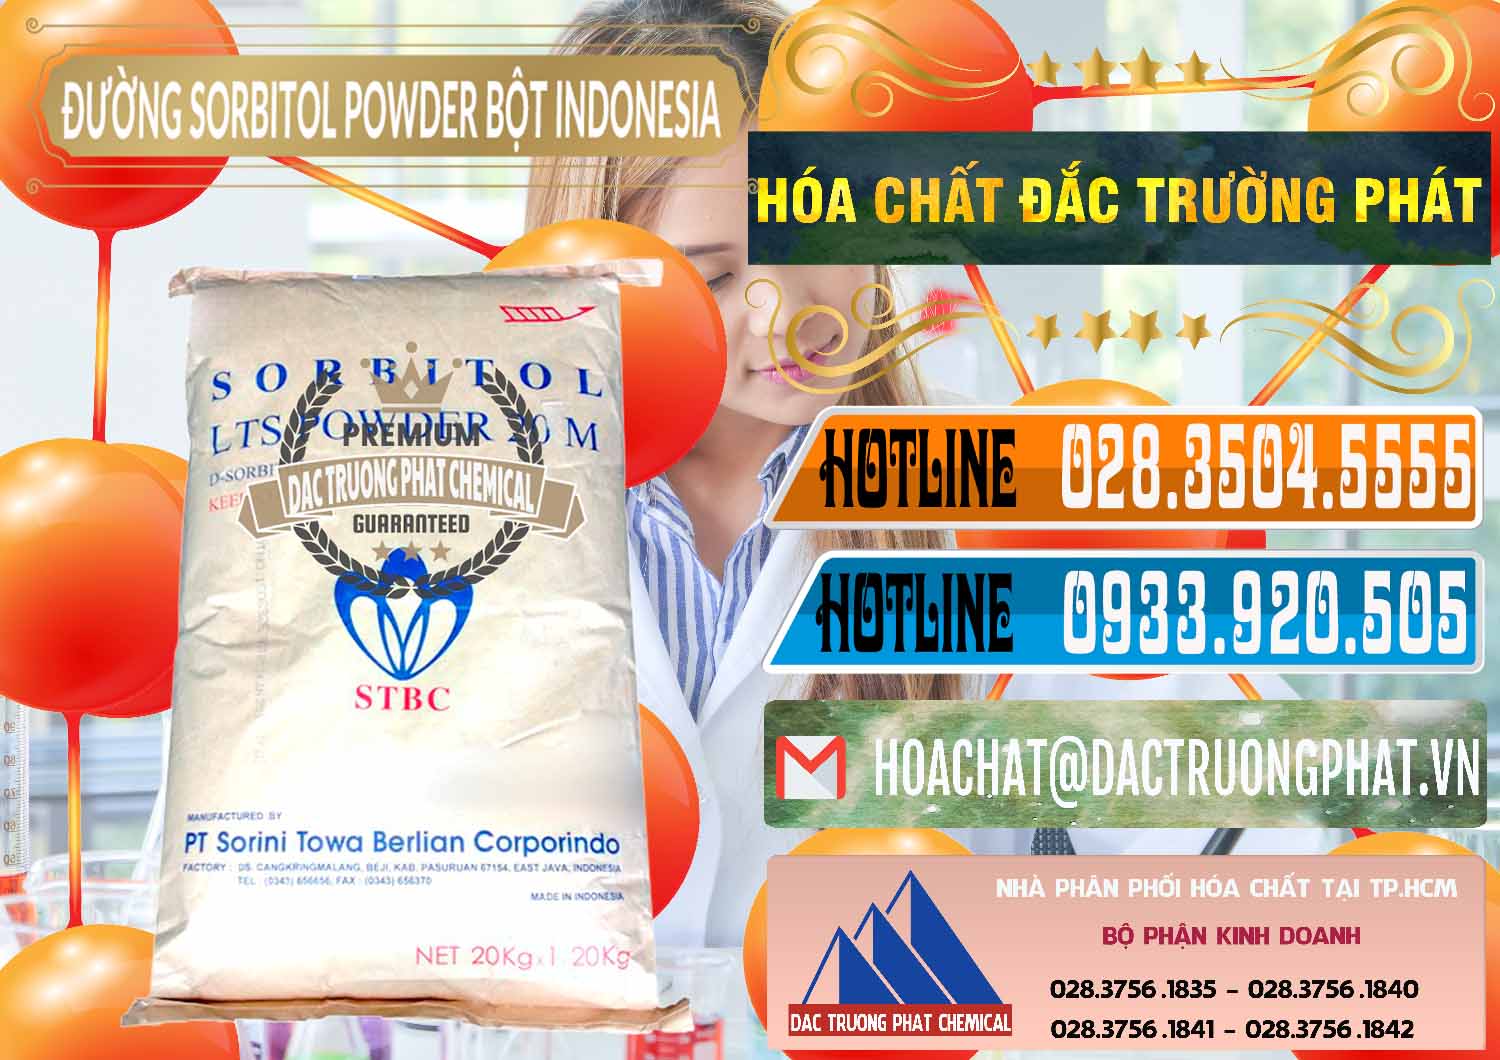 Cty cung cấp & bán D-Sorbitol Bột - C6H14O6 Food Grade Indonesia - 0320 - Đơn vị chuyên nhập khẩu _ cung cấp hóa chất tại TP.HCM - stmp.net